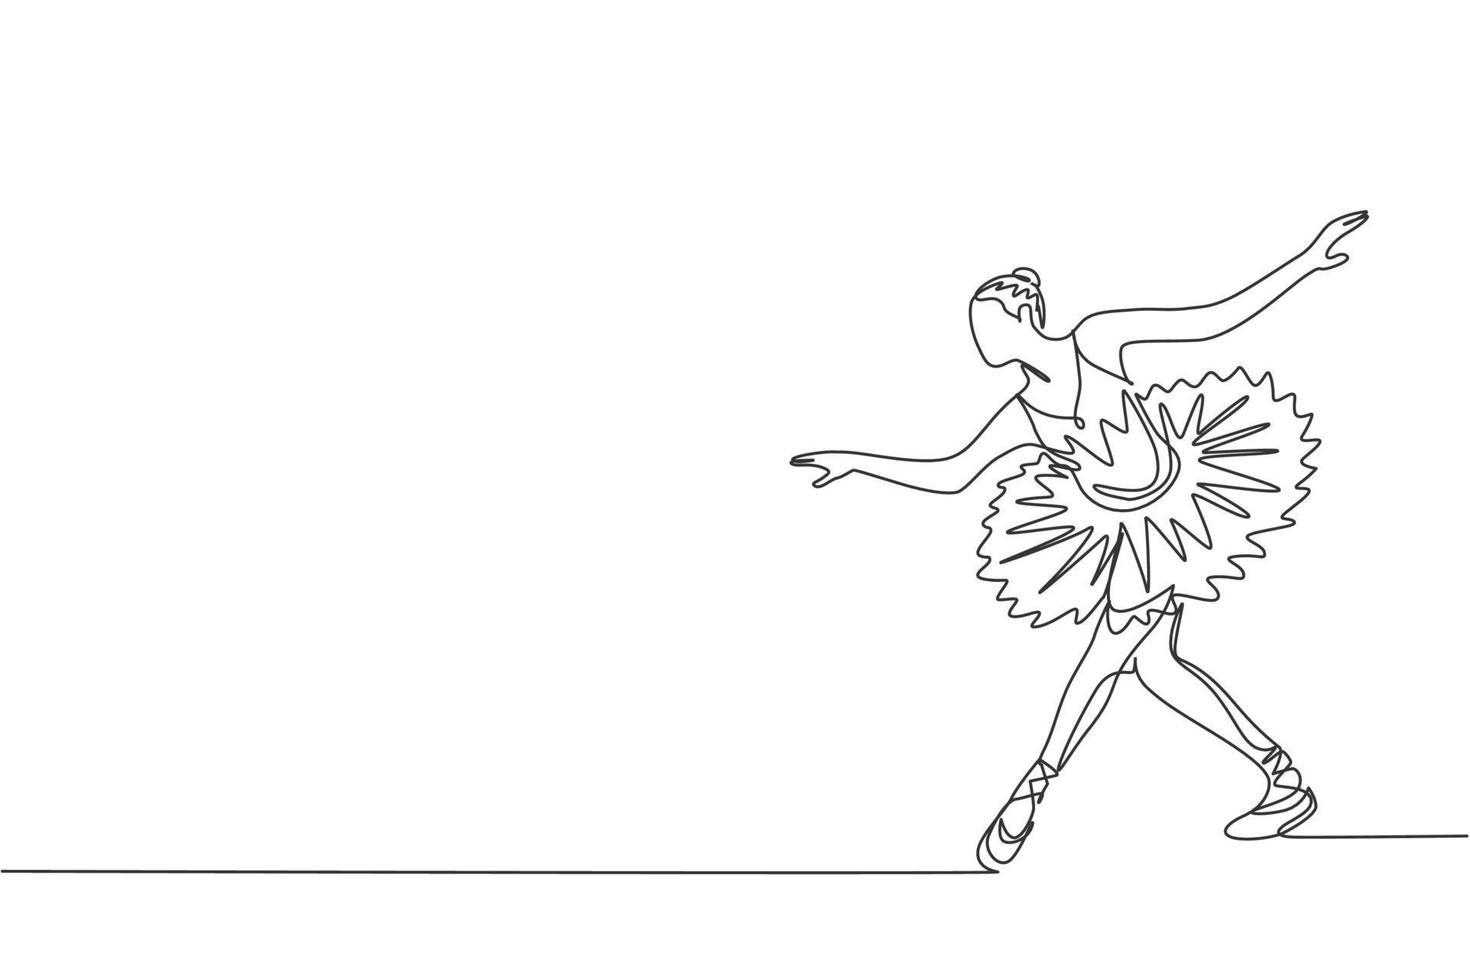 enkele doorlopende lijntekening van jonge sierlijke mooie ballerina demonstreerde klassieke balletchoreografie dansvaardigheid. opera dans concept. trendy één lijn tekenen ontwerp grafische vectorillustratie vector